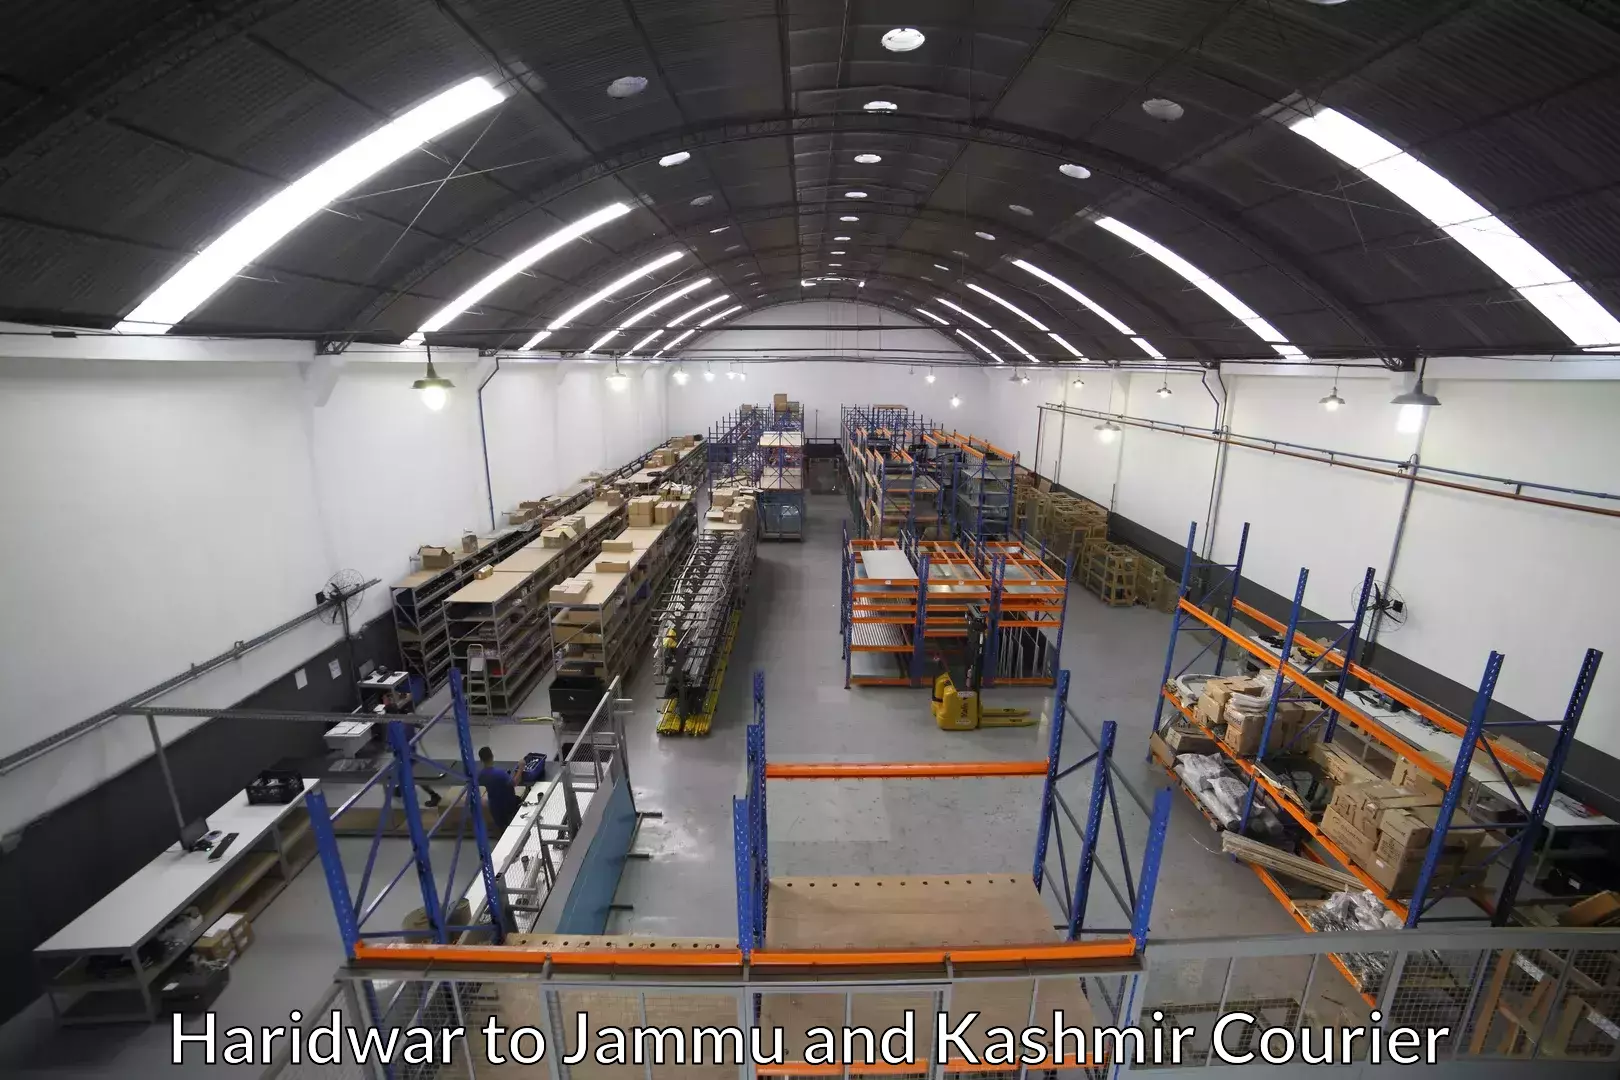 Professional moving company Haridwar to Kupwara